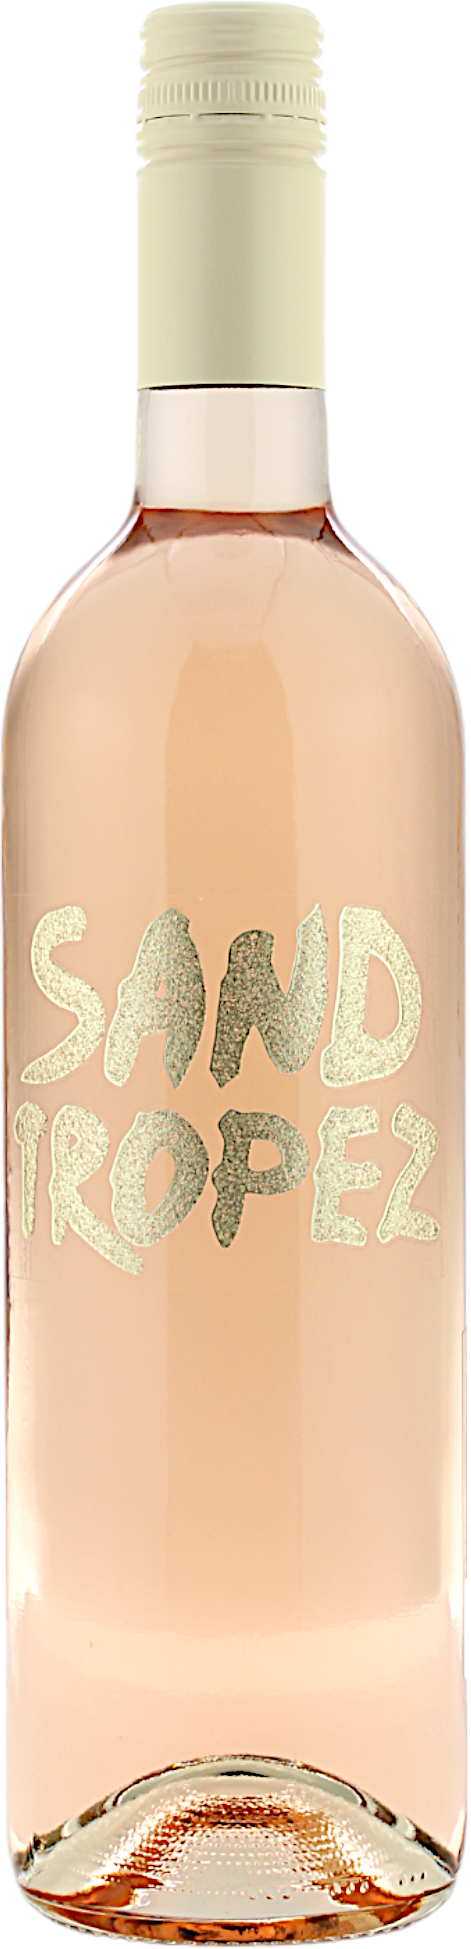 Sand Tropez Rosé 12.5% 0,75l  